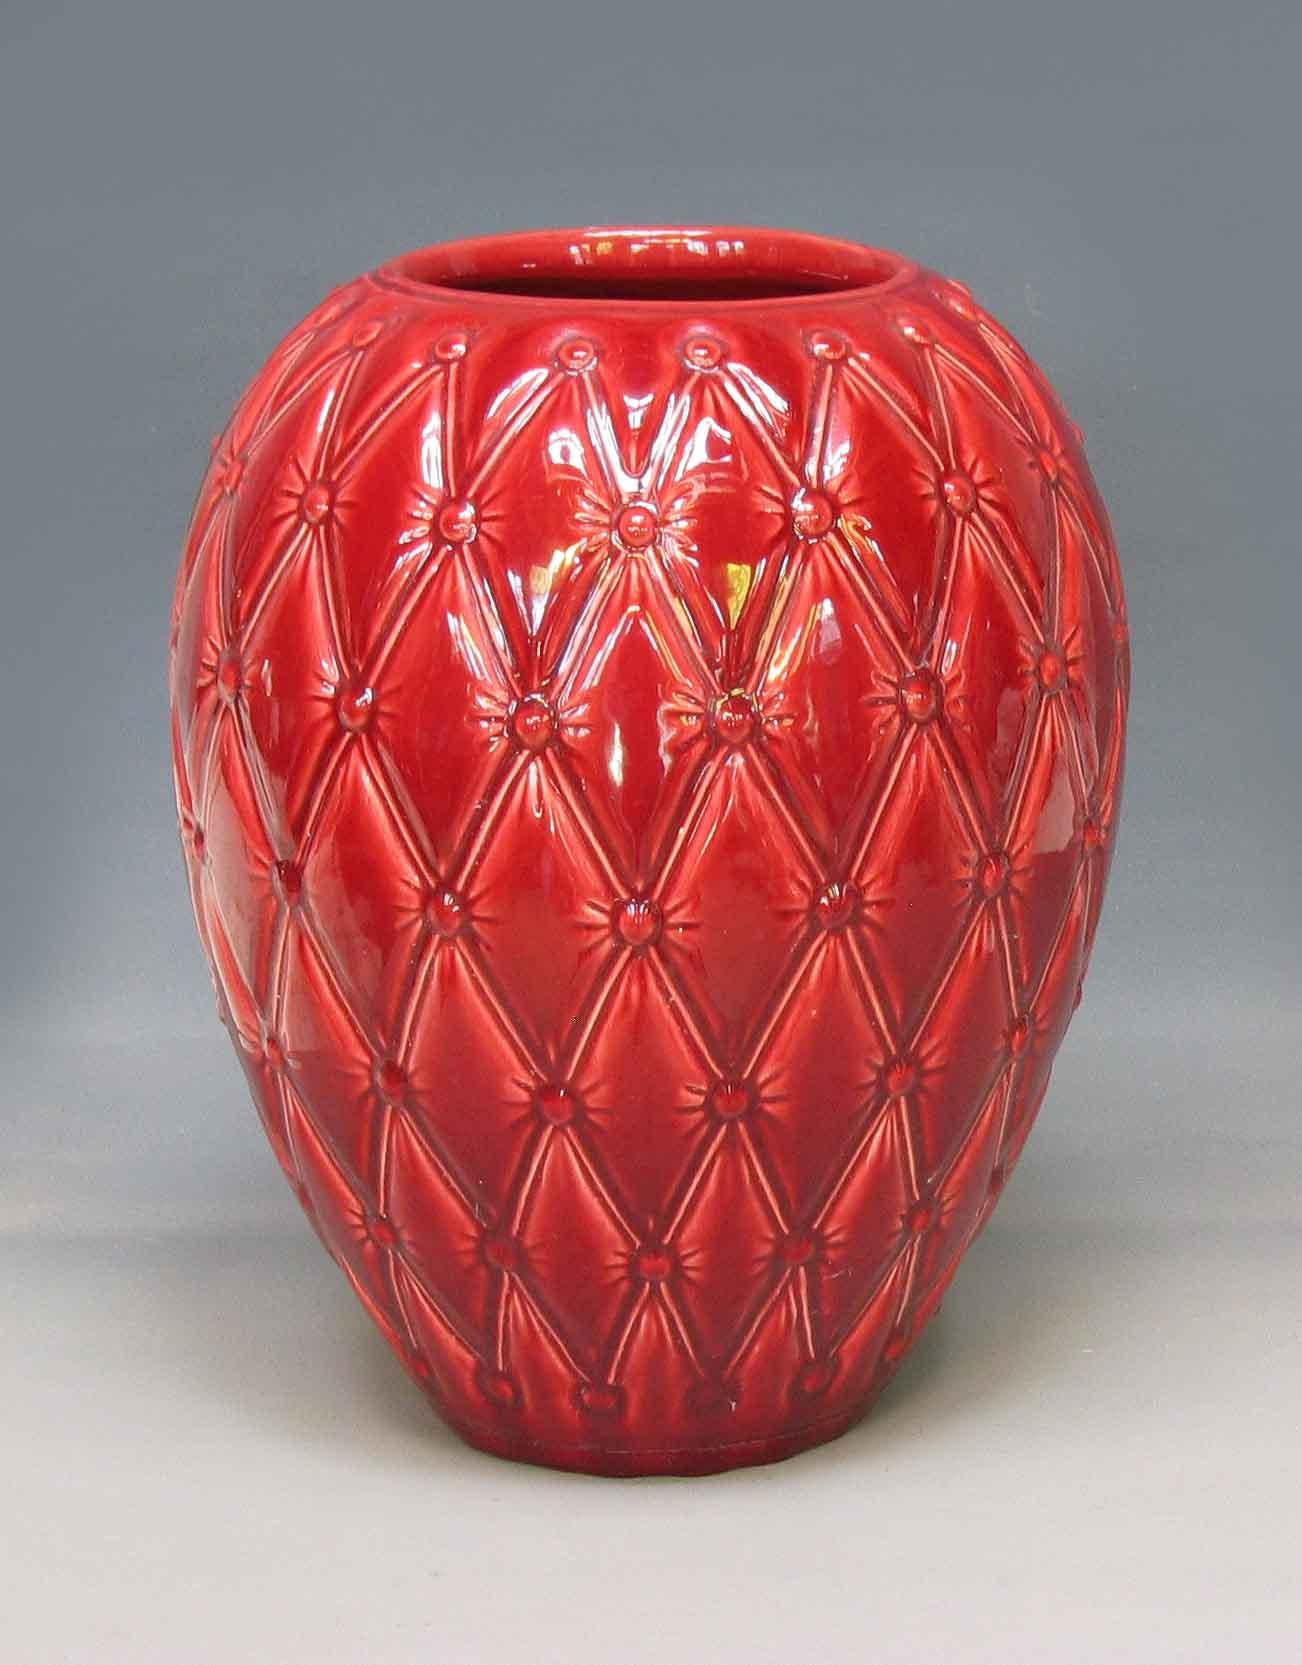 Large Red Glazed Art Studio Pottery Vase For Sale 2